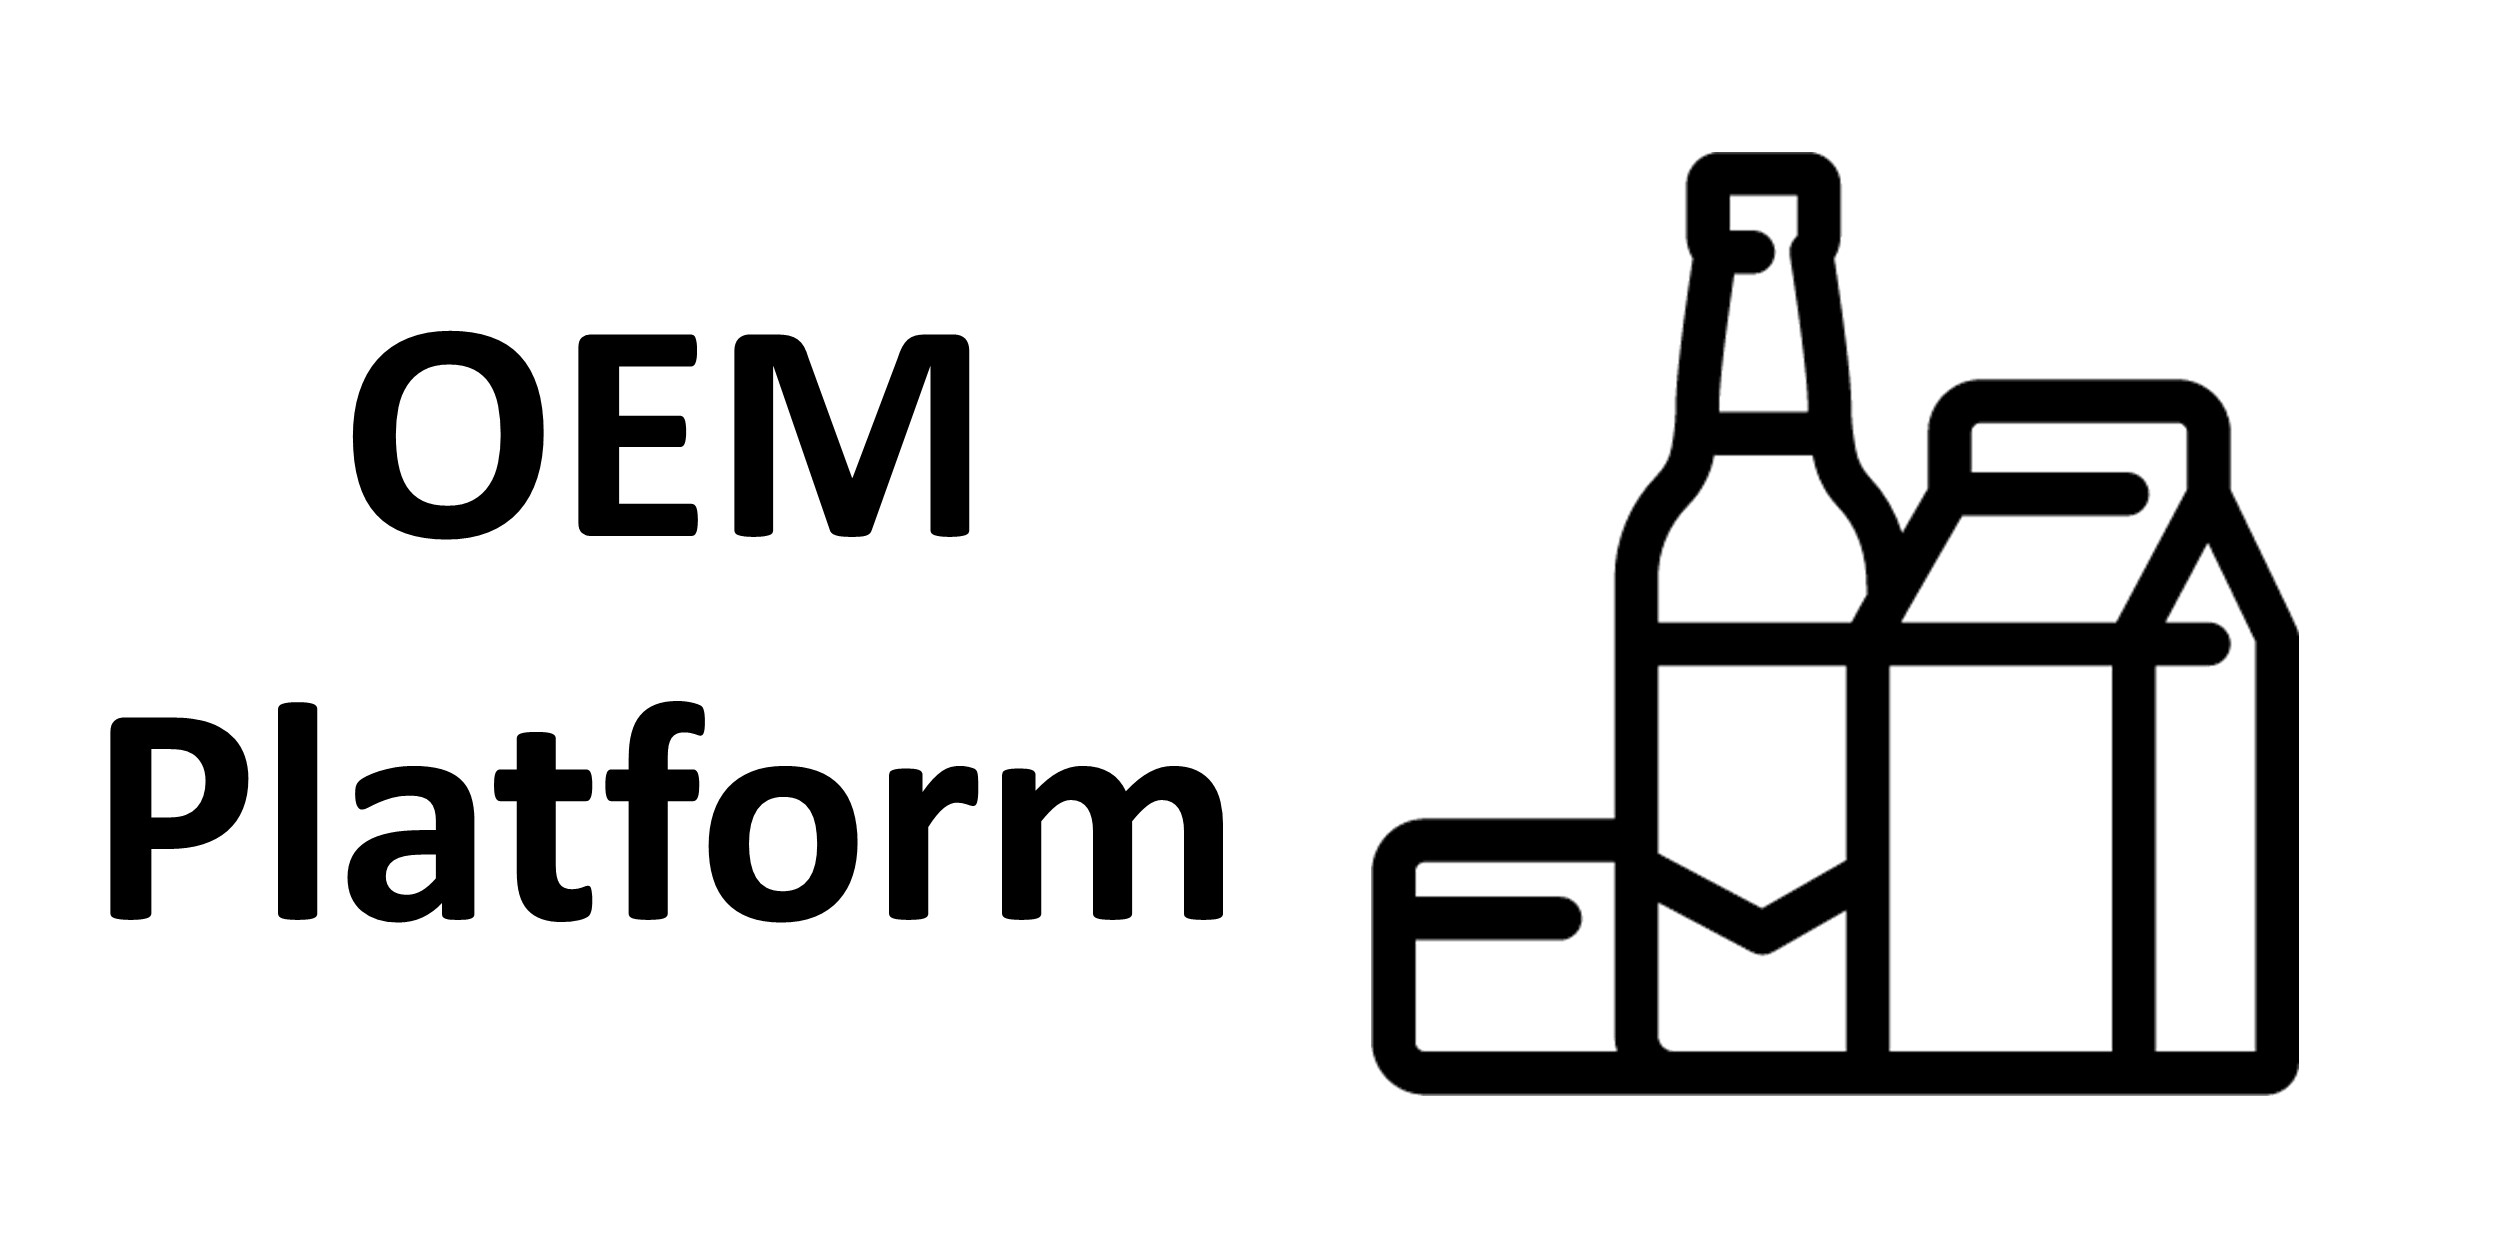 OEM Platform